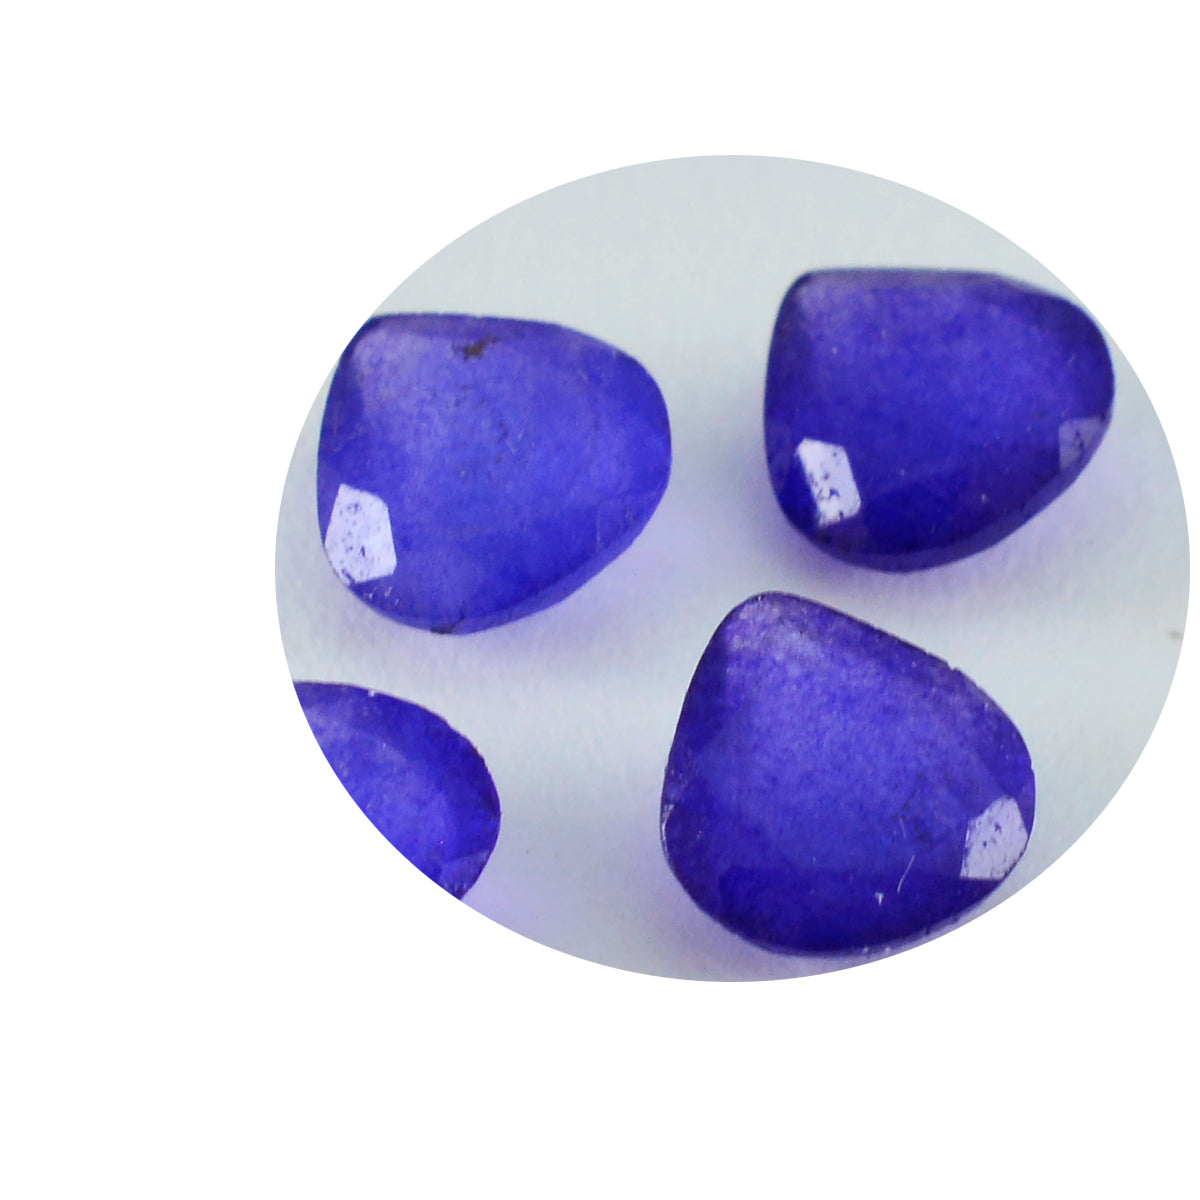 riyogems 1 pezzo di diaspro blu autentico sfaccettato 11x11 mm a forma di cuore, pietra preziosa di ottima qualità